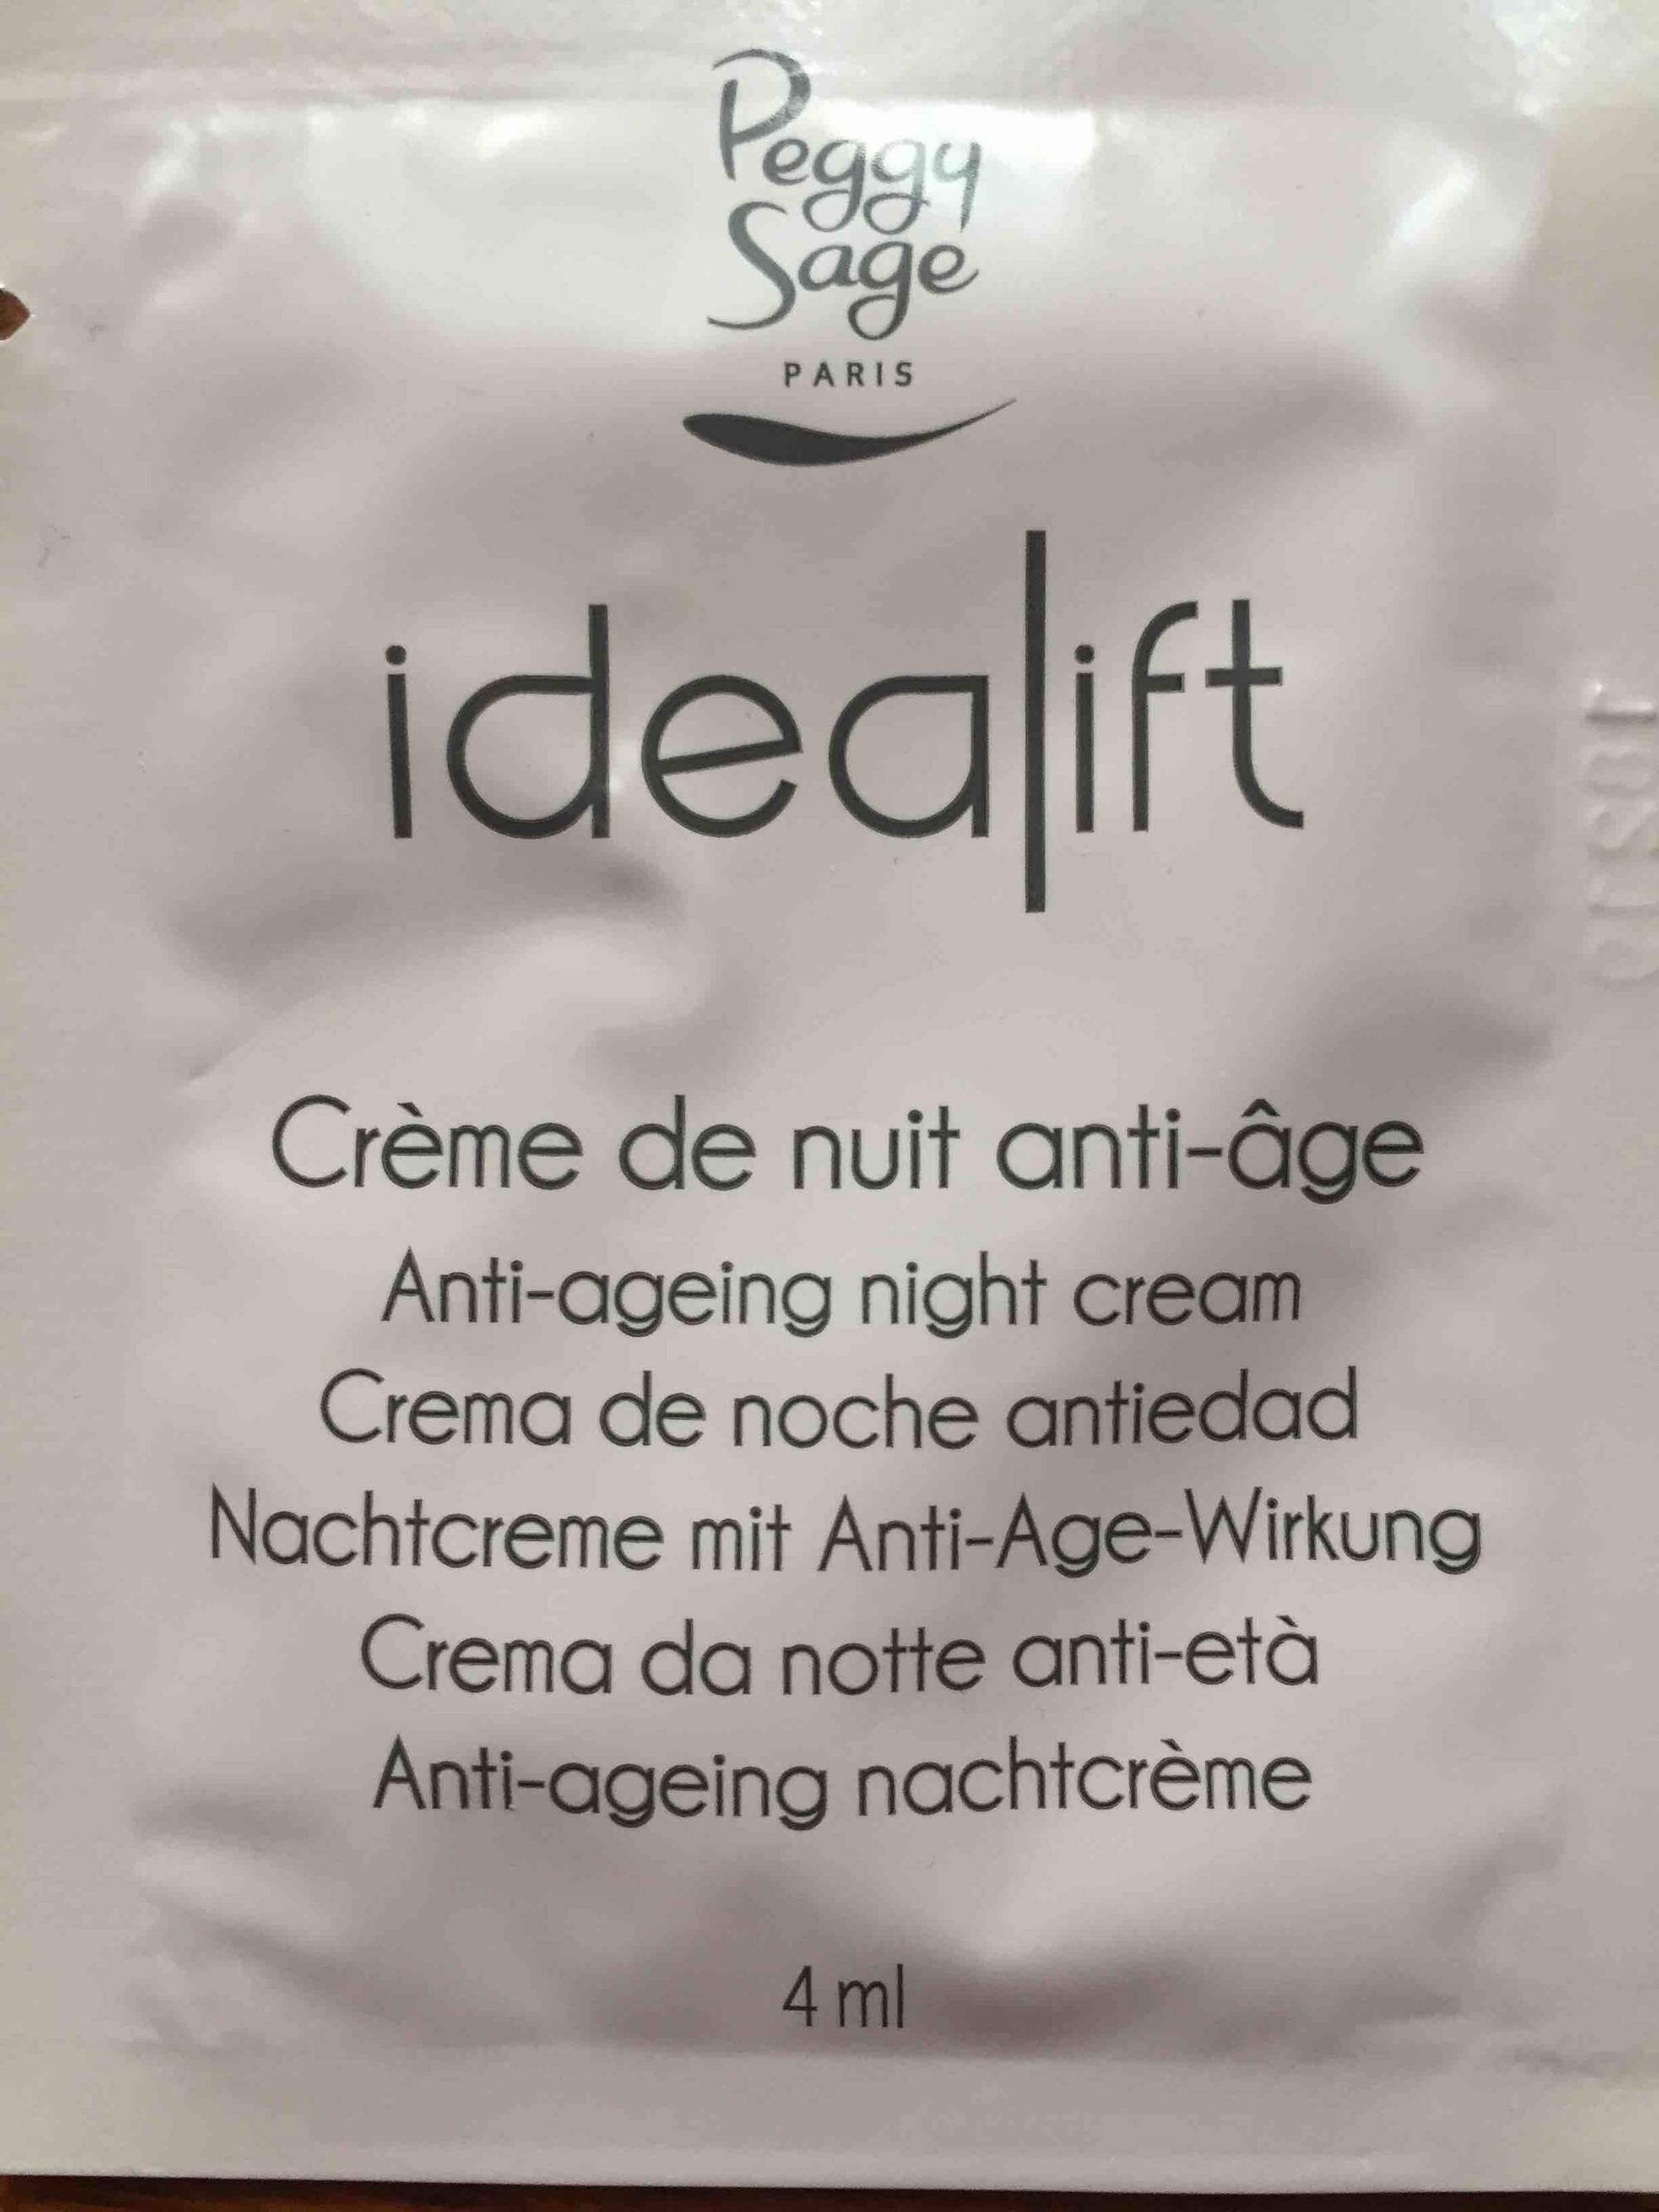 PEGGY SAGE - Idealift - Crème de nuit anti-âge